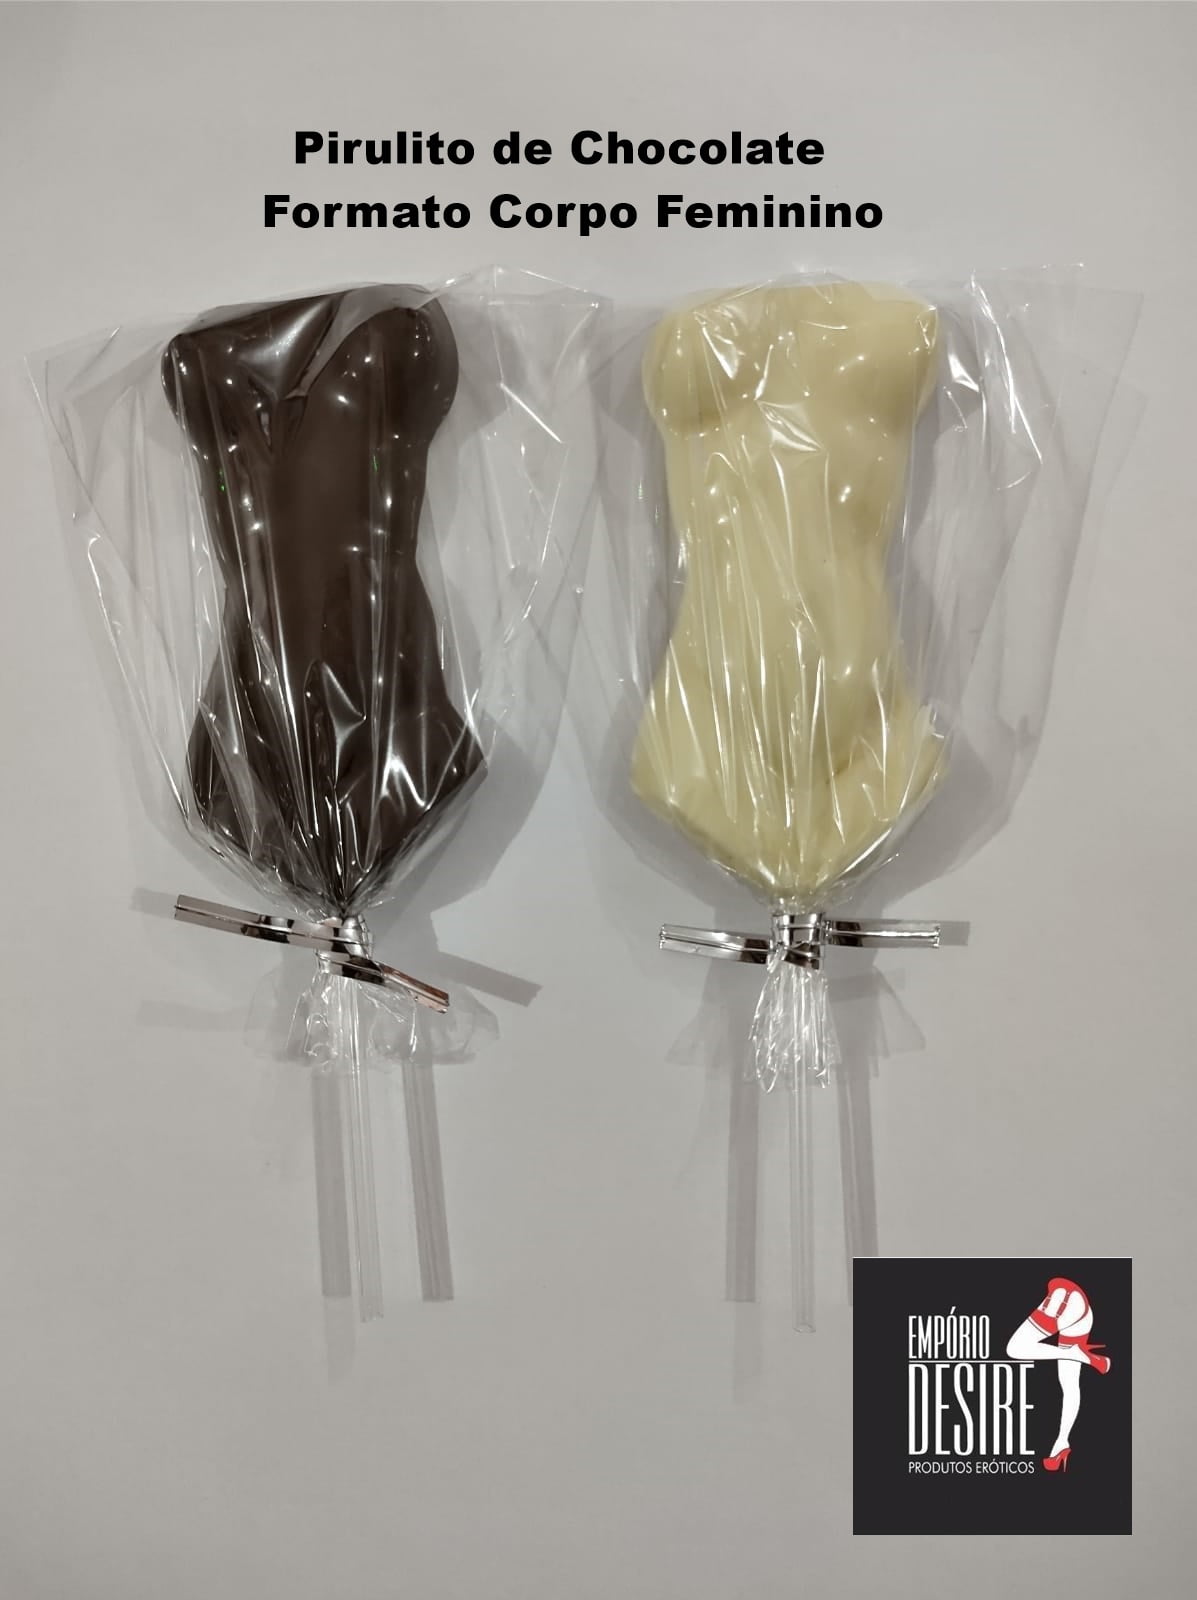 PIRULITO DE CHOCOLATE FORMATO CORPO FEMININO EMPORIO DESIRE